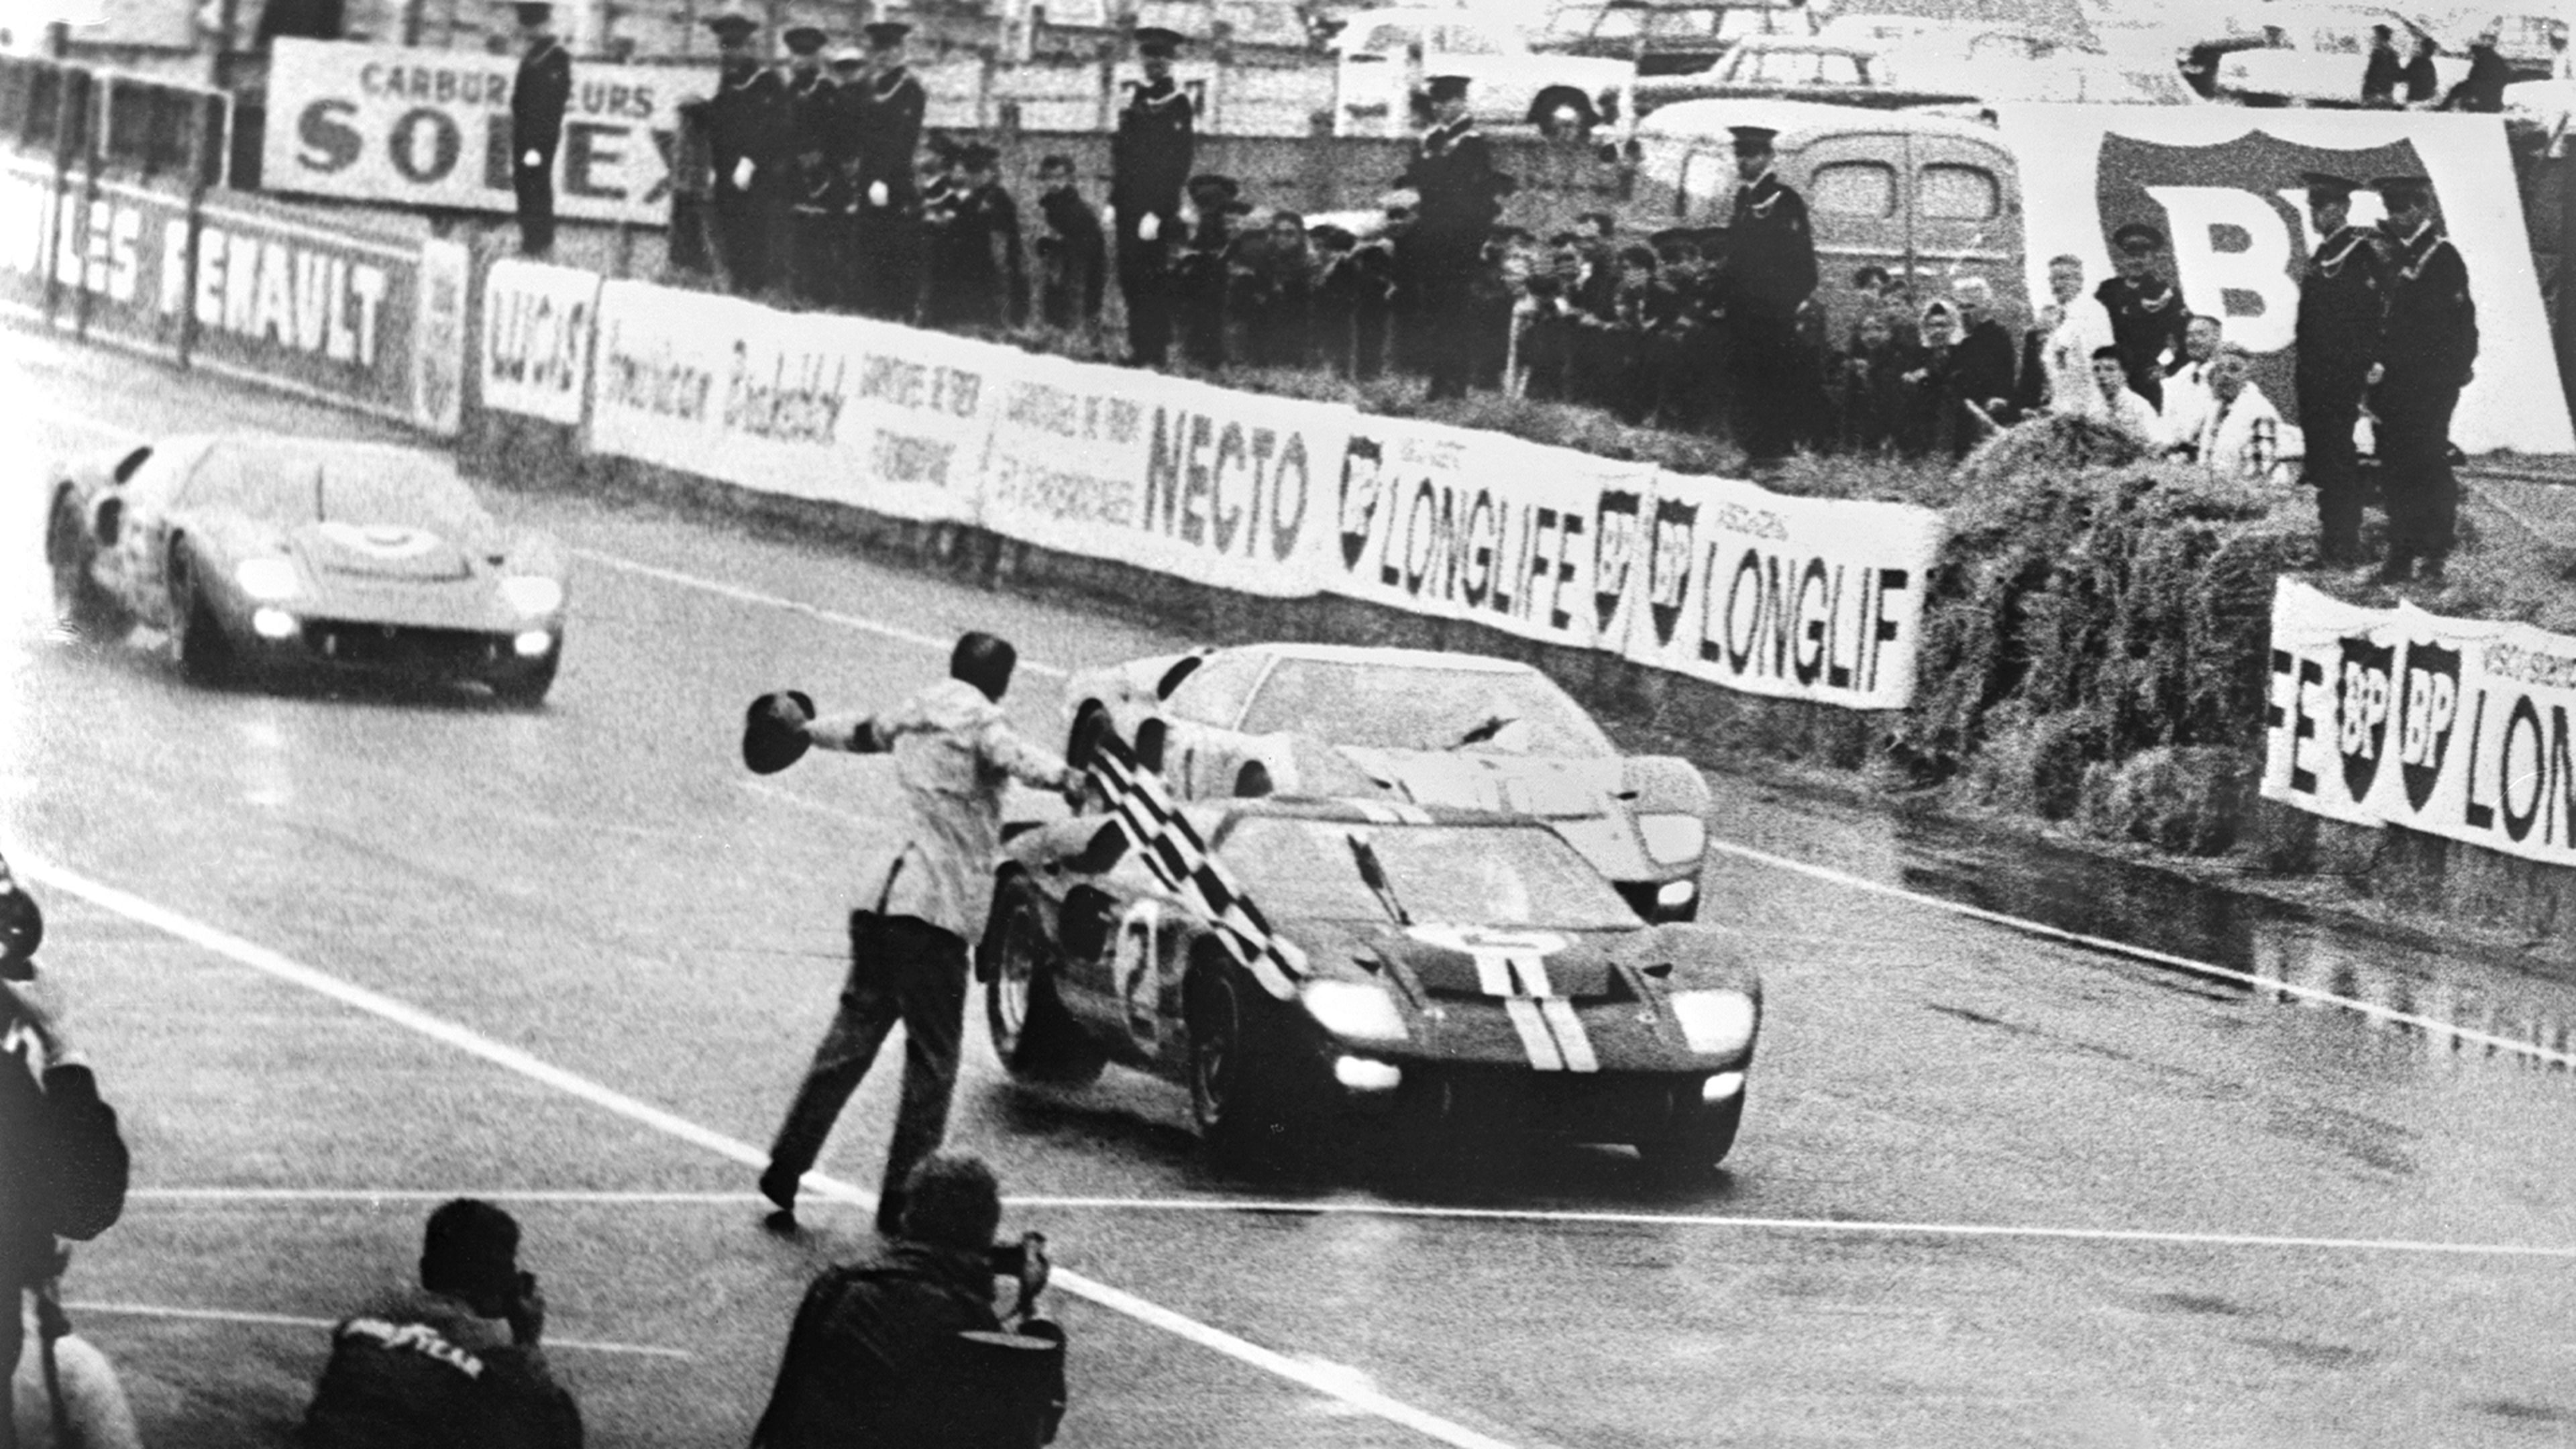 Los tres Ford GT40 llegando a meta en las 24 Horas de Le Mans, 1966.